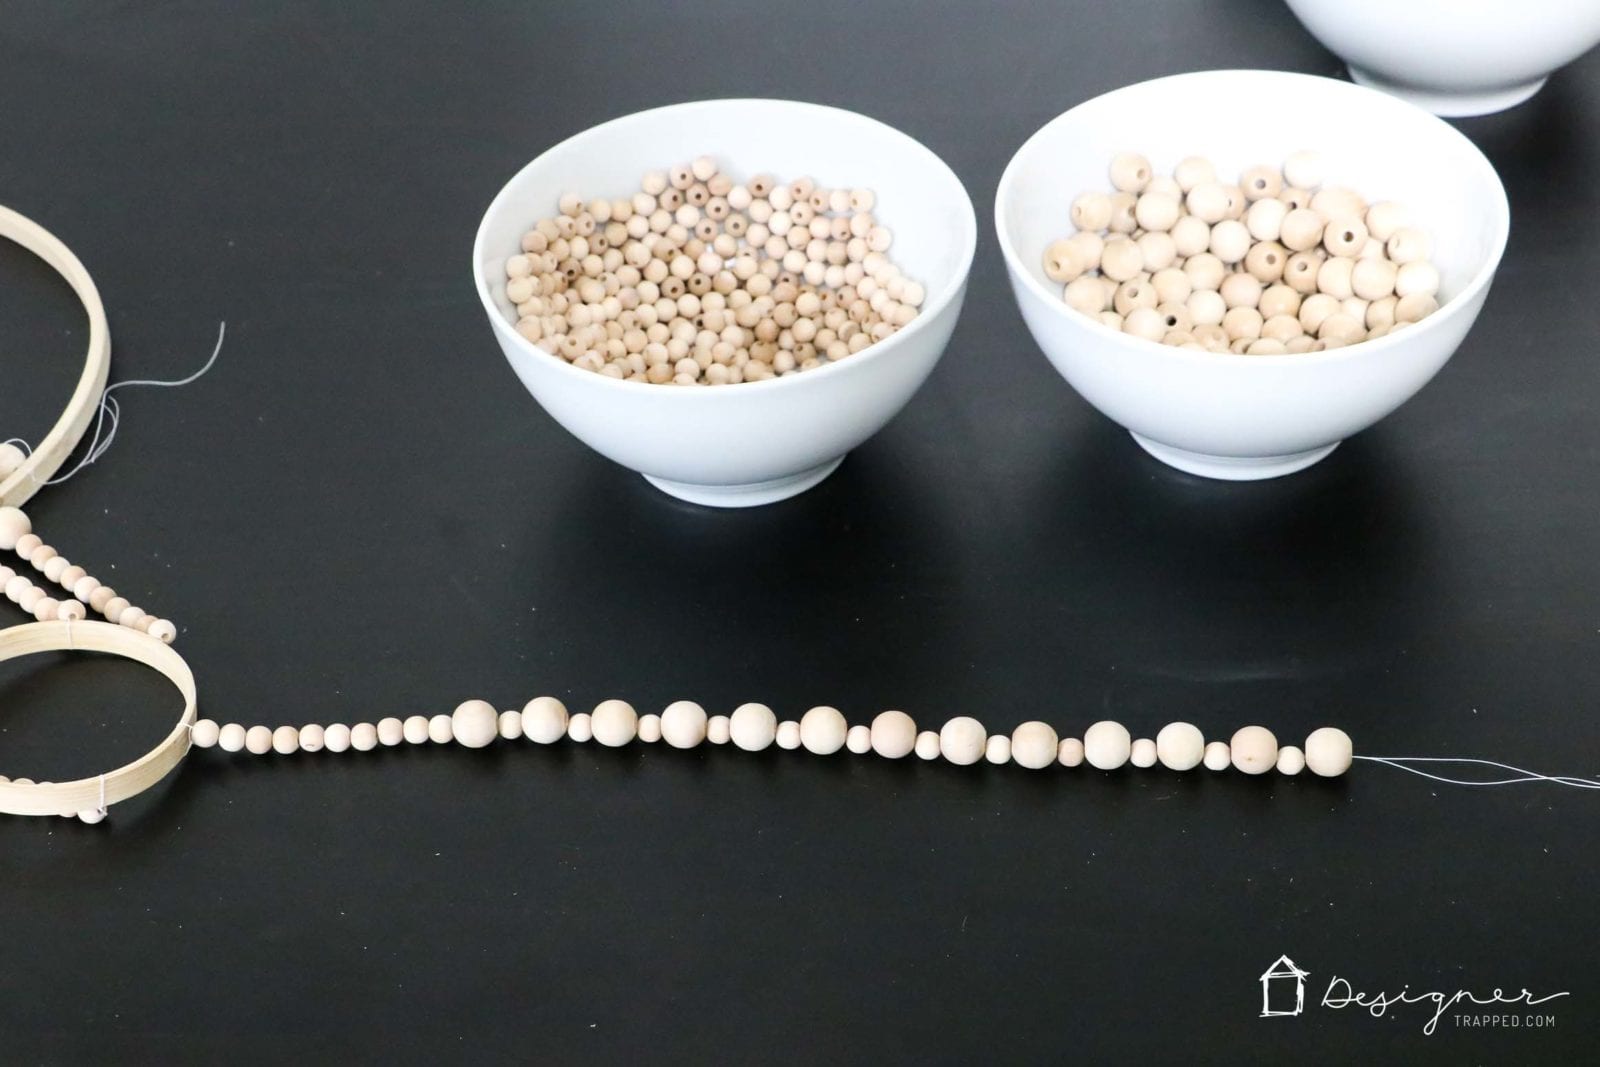 stringing strands of wood beads for DIY chandelier